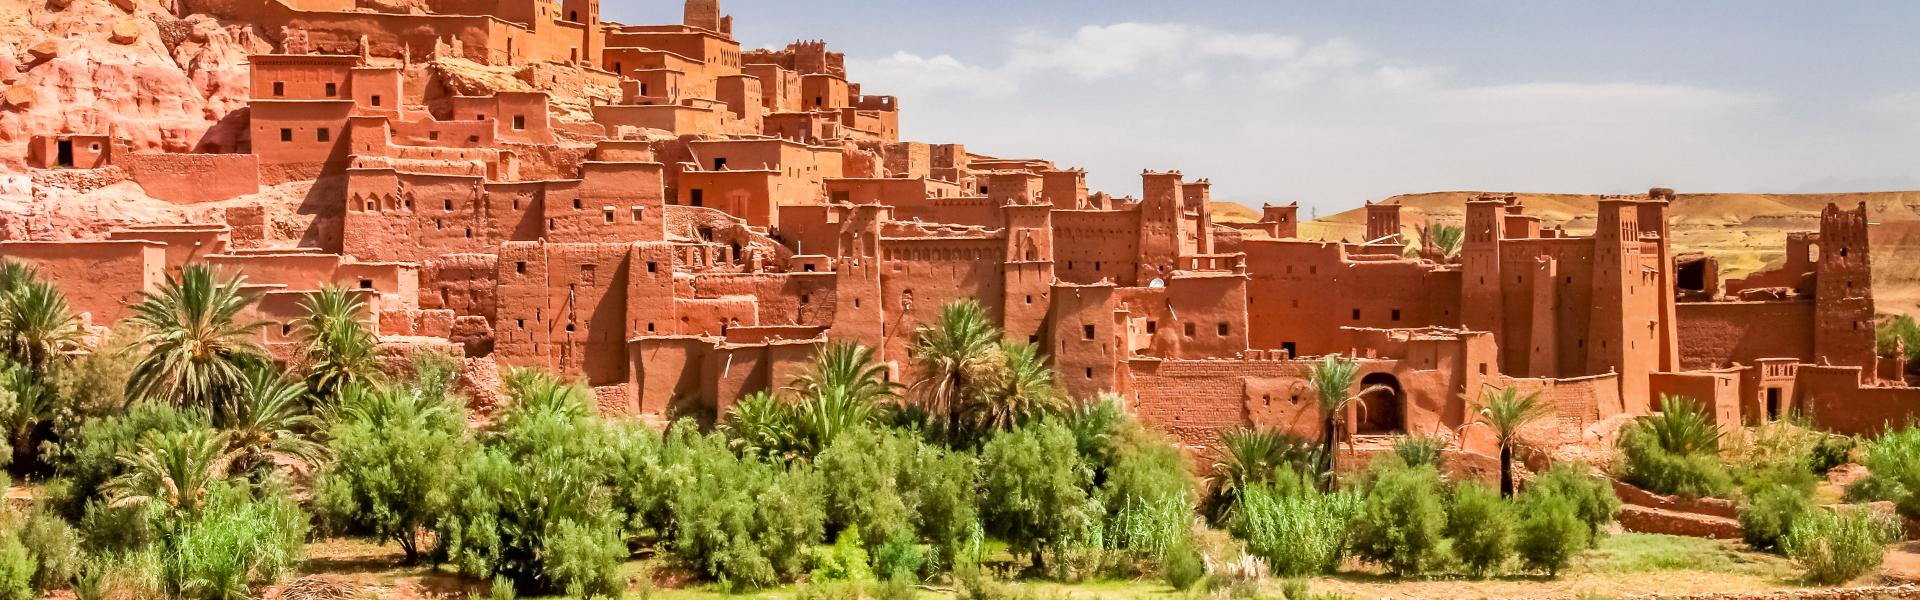 Vakantiehuizen en villa's in Marokko - HomeToGo